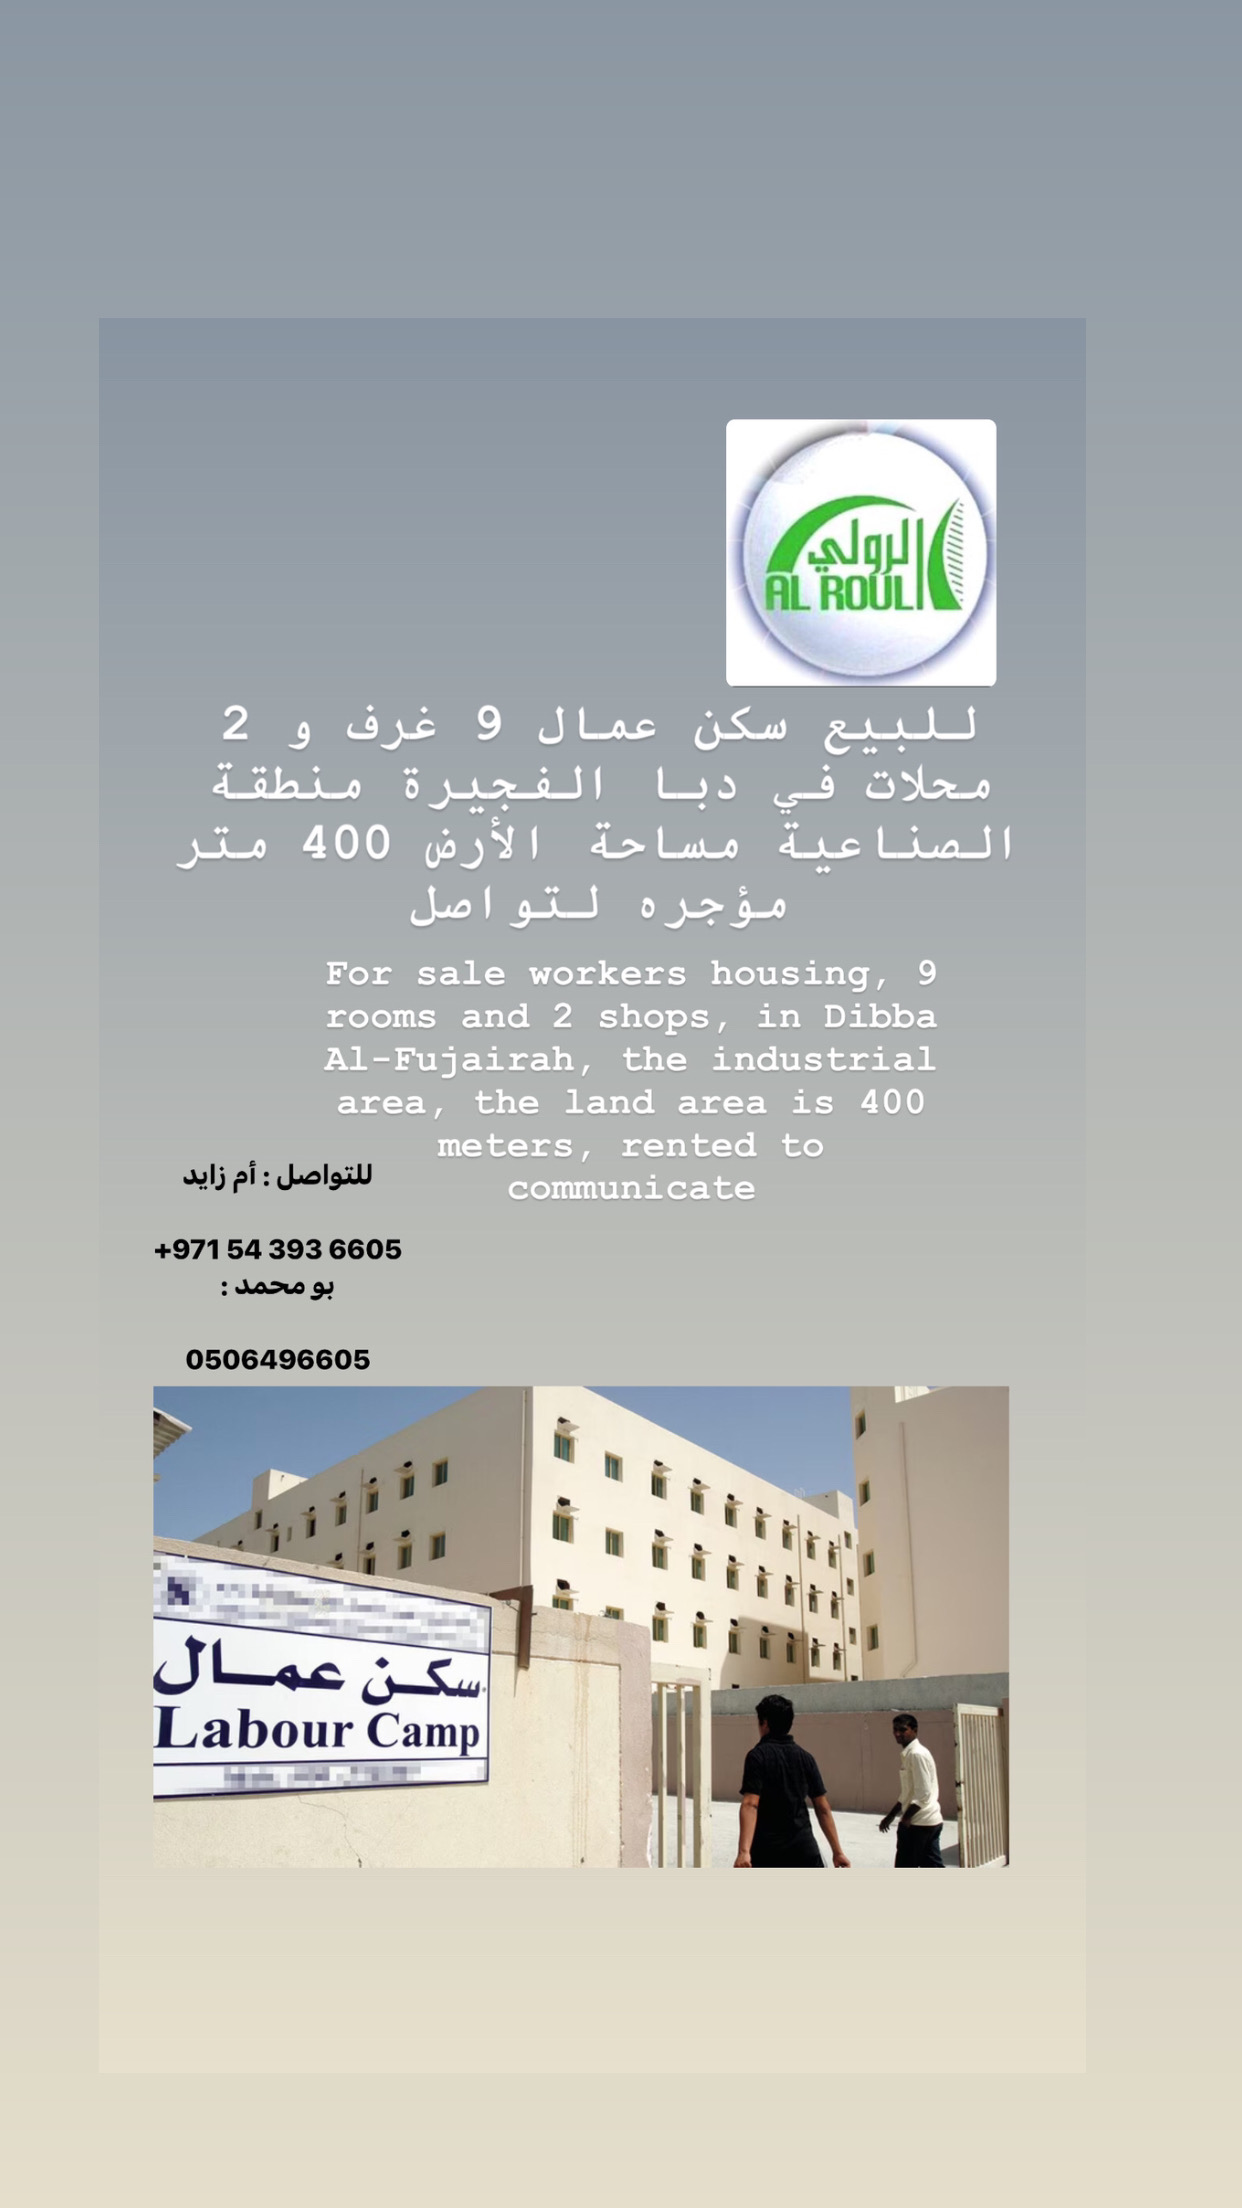 بيع سكن عمال 9 غرف و 2 محلات في دبا الفجيره